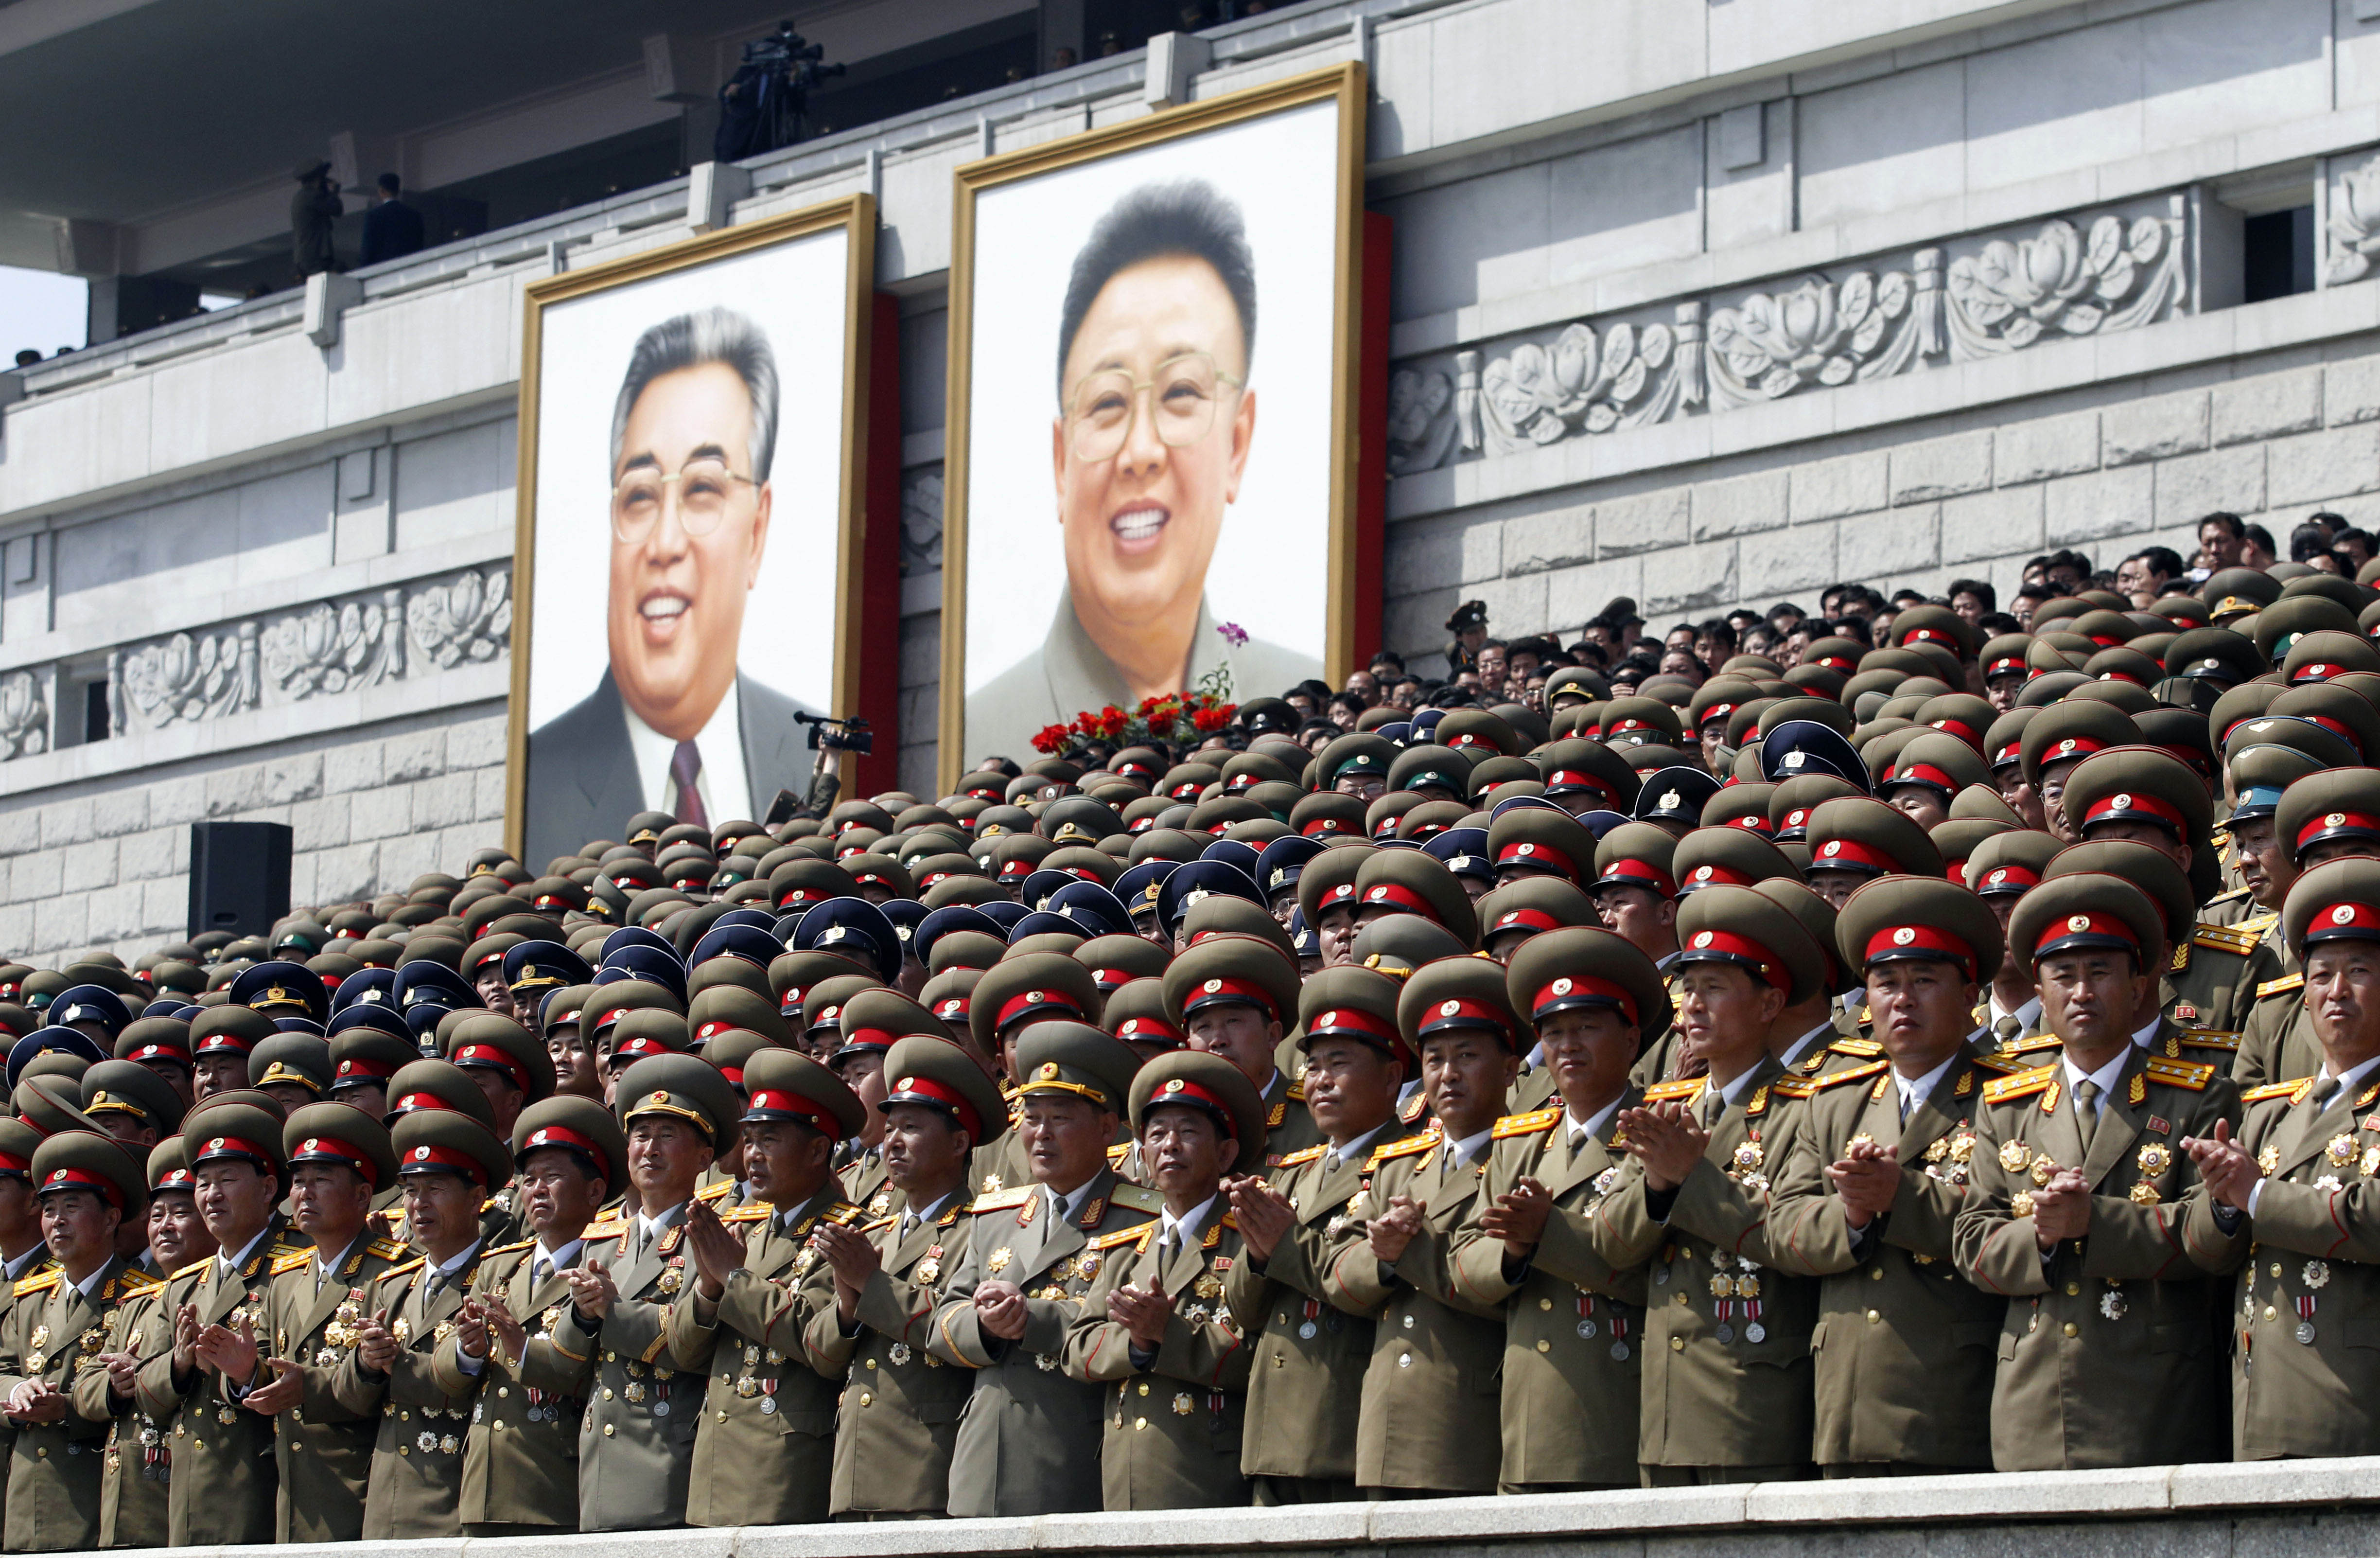 Ledaren Kim Il Sung och sonen Kim Jong Il hyllas under en parad.